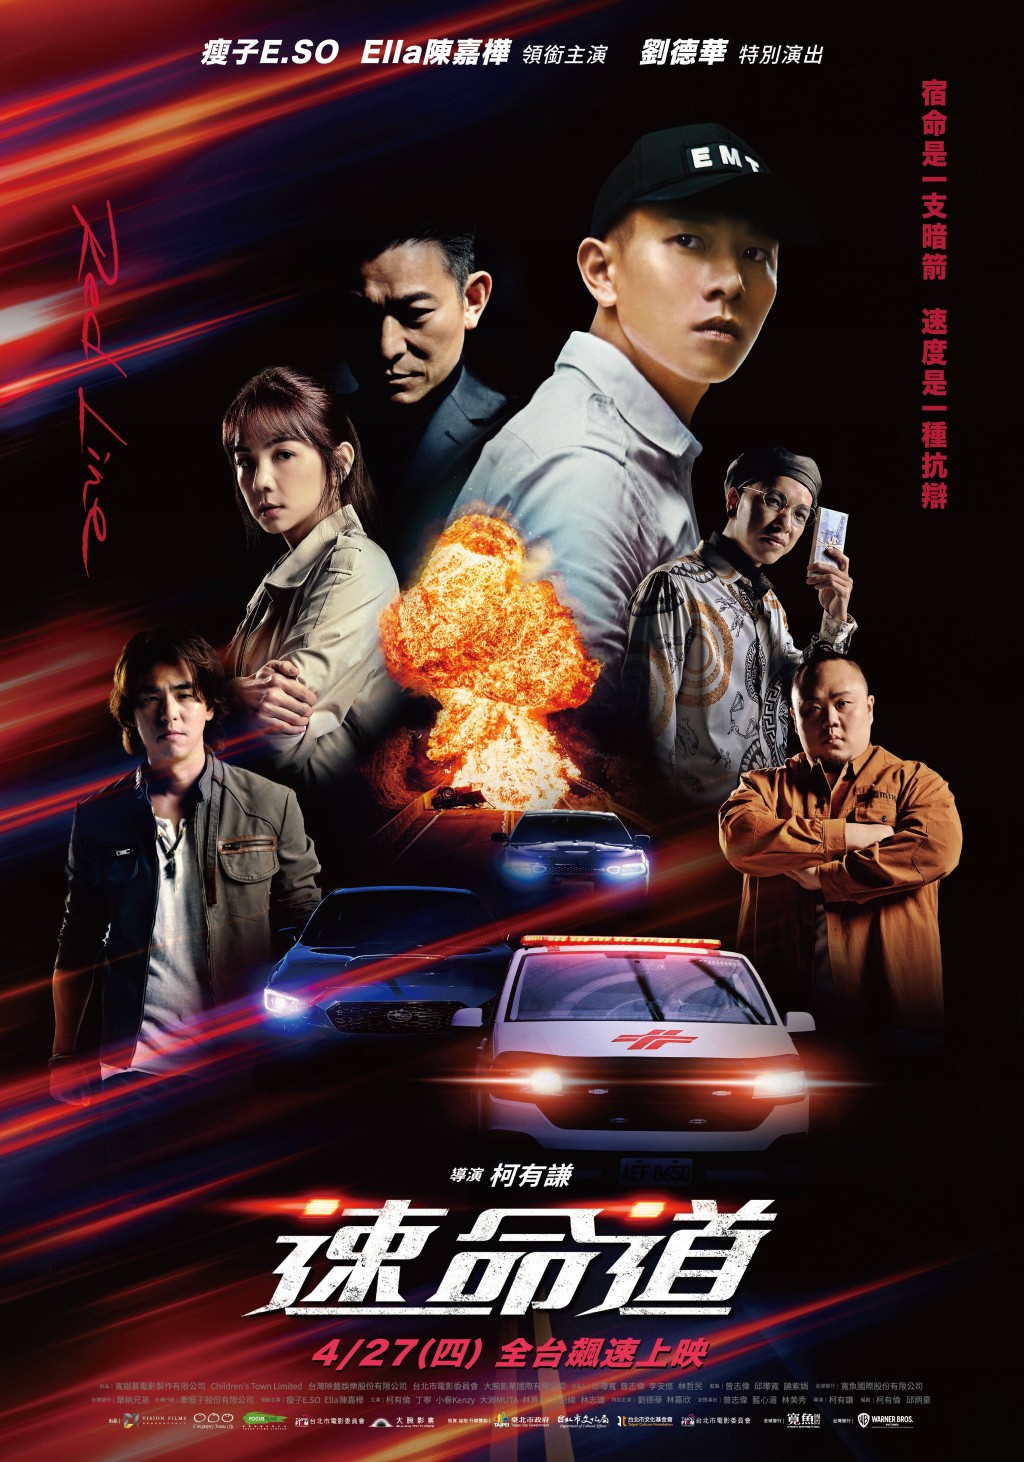 柯有謙去年以新導演身份拍攝台灣電影《速命道》。